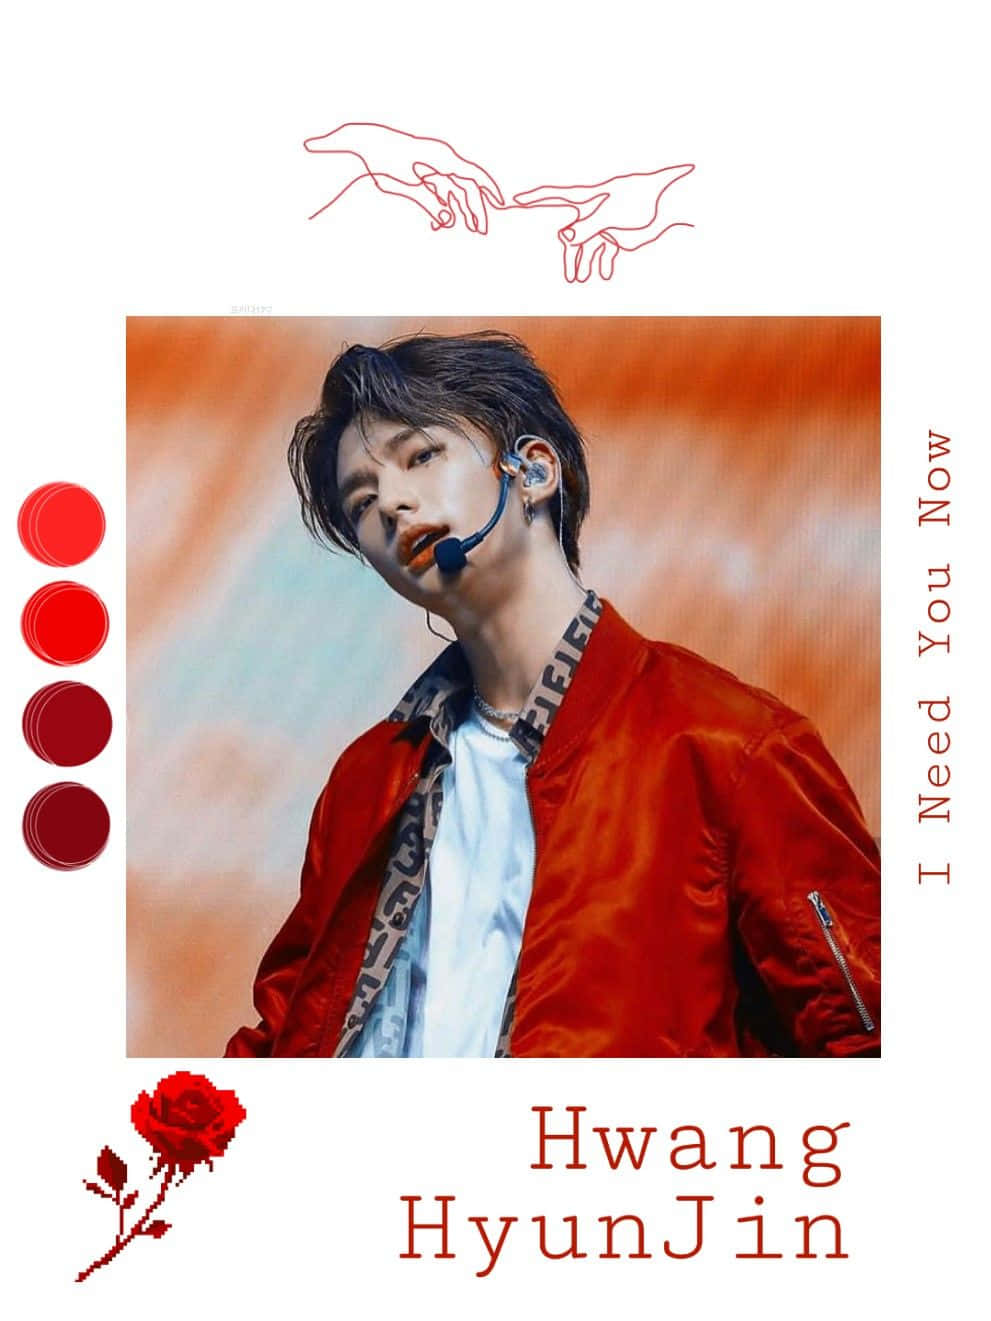 South Korean Singer Hyunjin Wearing a Red Jacket Wallpaper